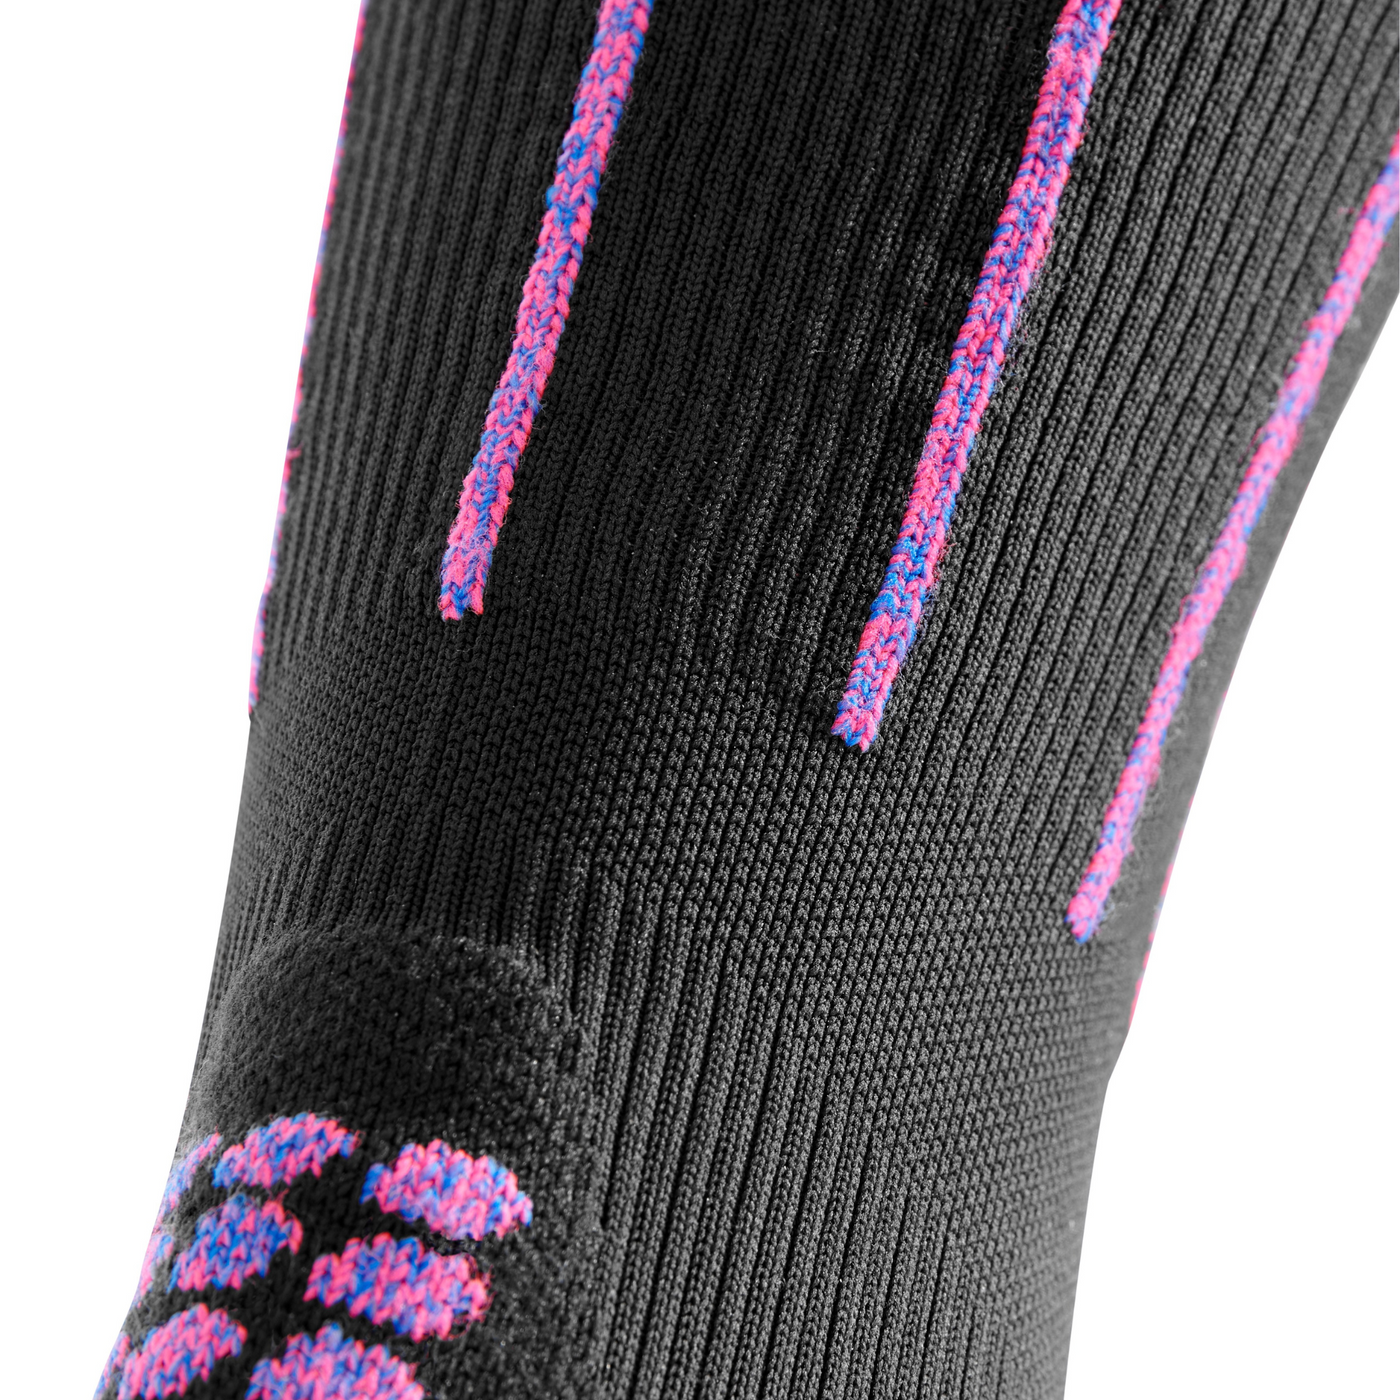 Pinstripe Tall Compression Socks, Men